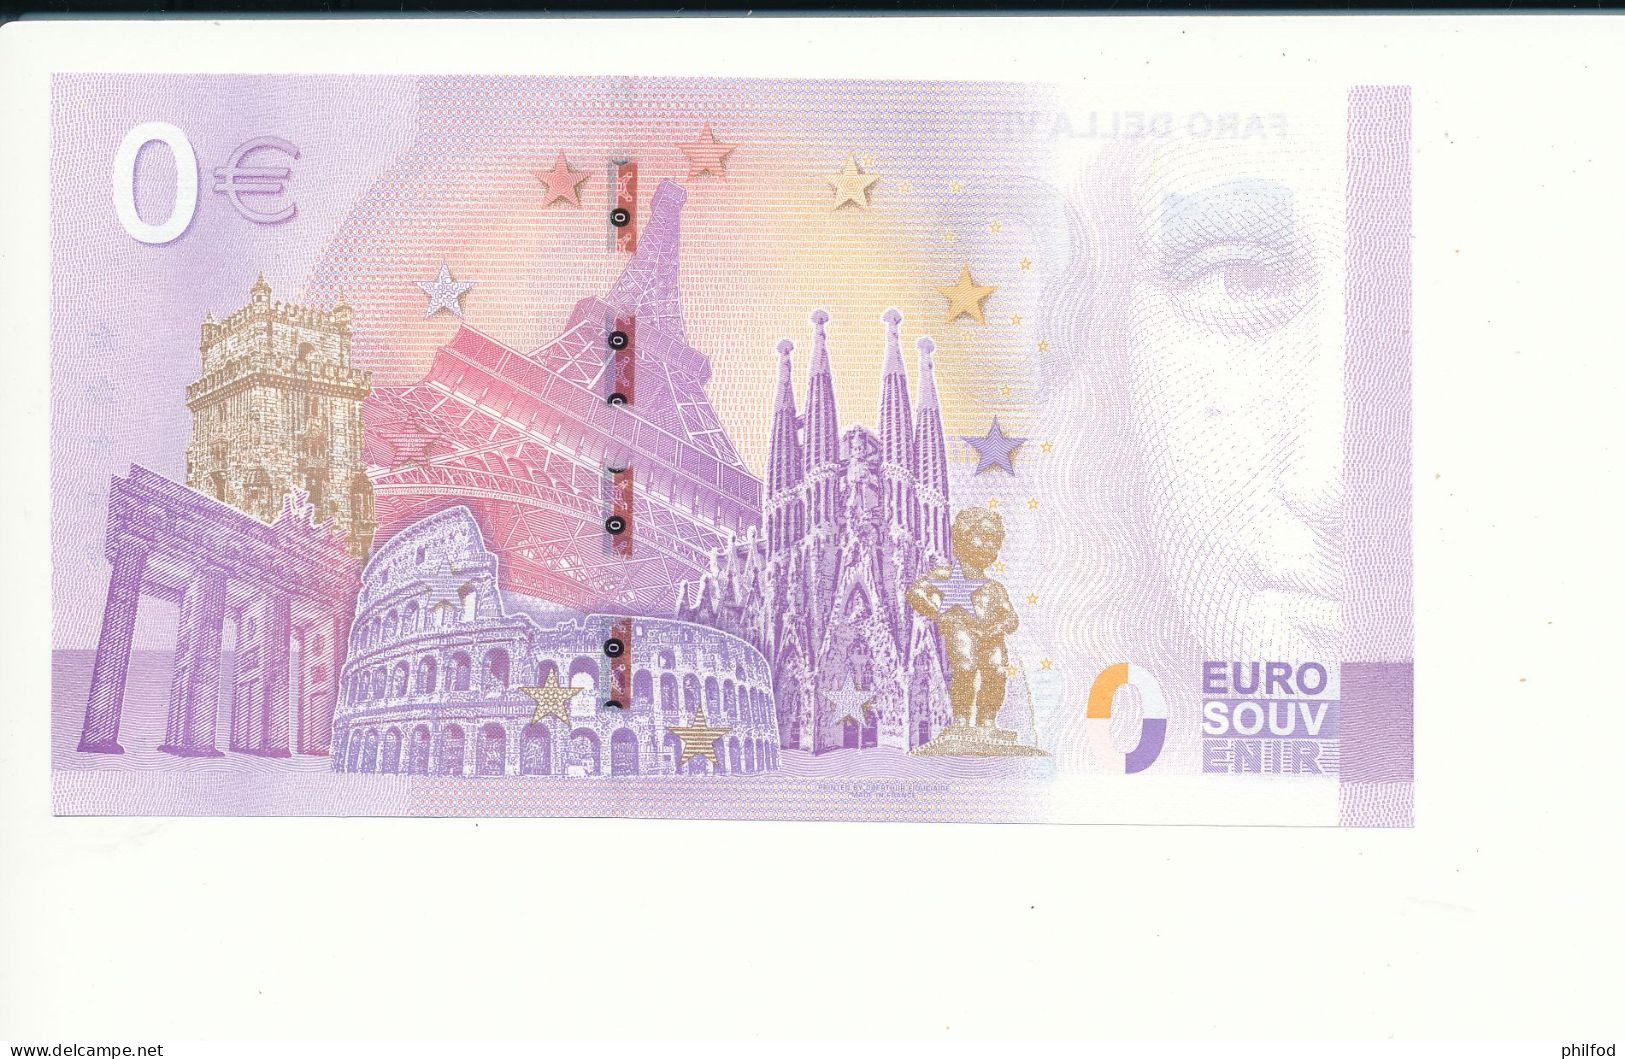 Billet Touristique  0 Euro  - FARO DELLA VITTORIA - UEPL - 2022-4 -  N° 4115 - Other & Unclassified